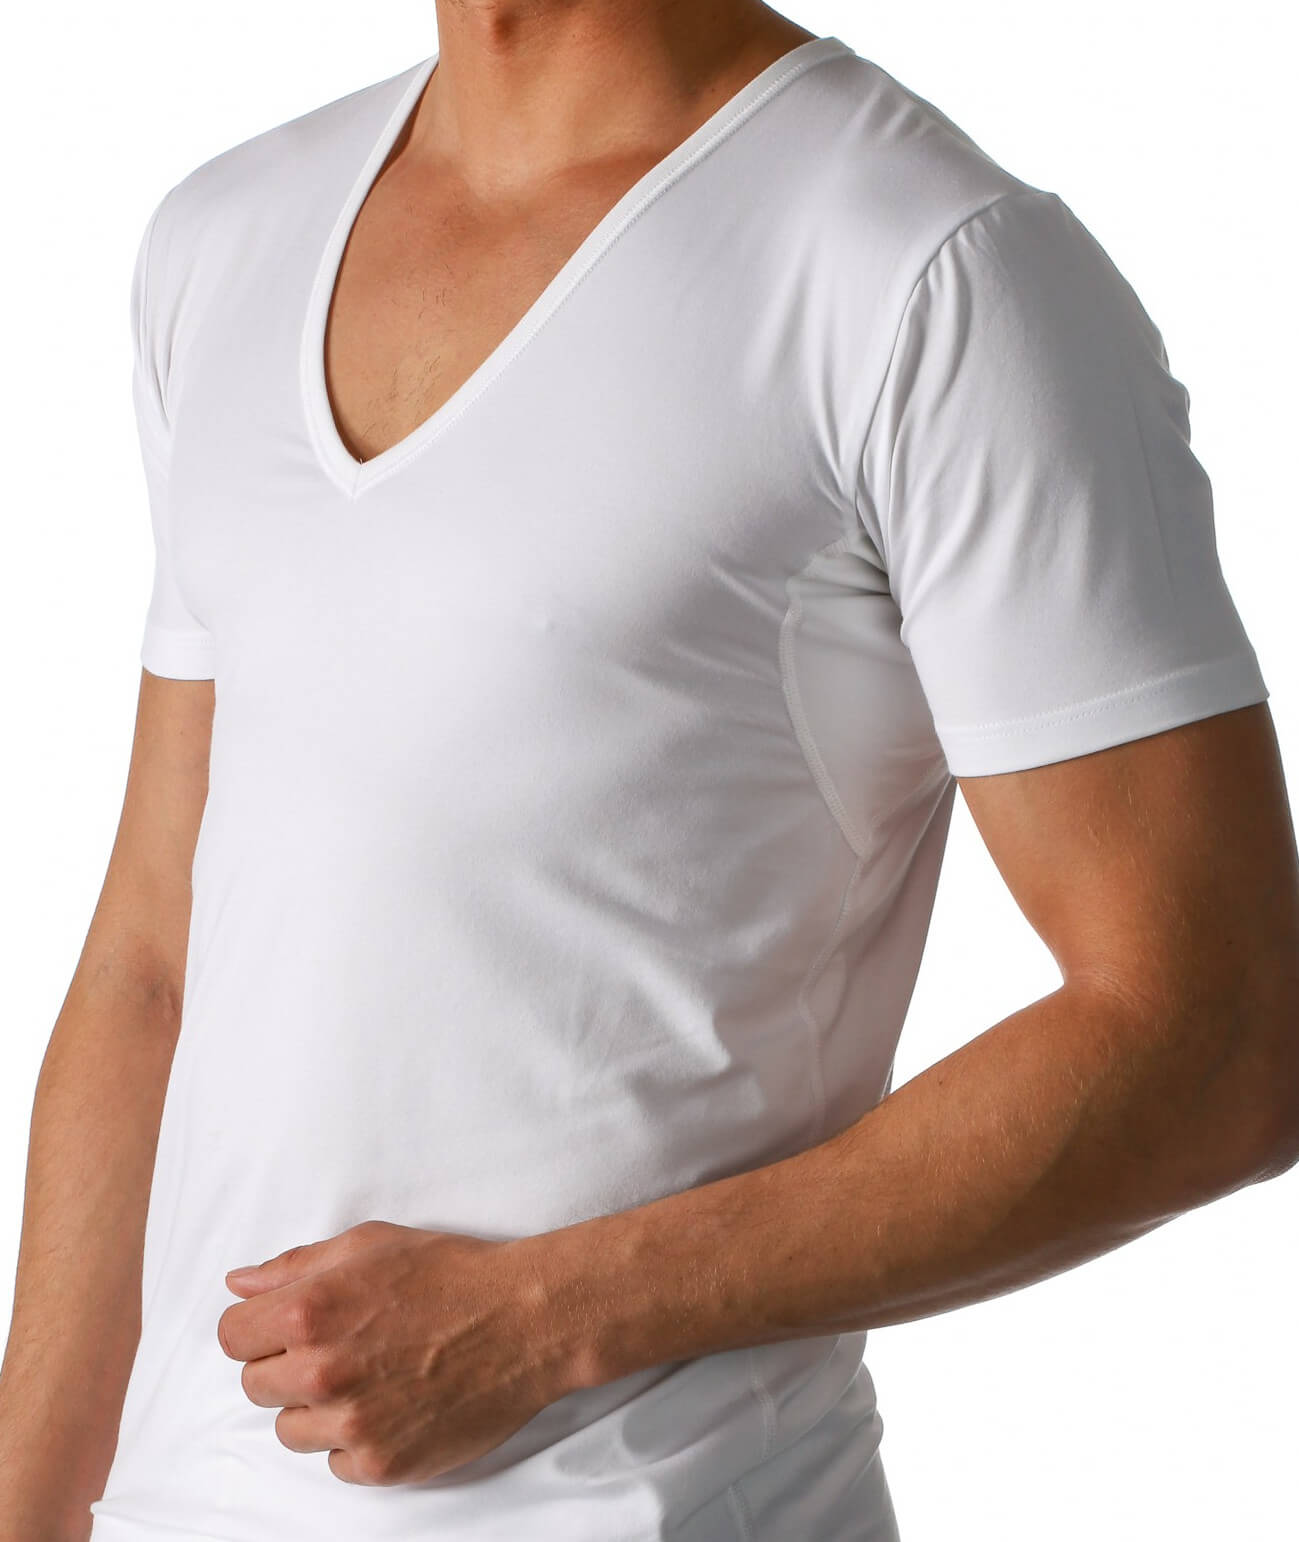 2er-Pack Mey Serie Dry Cotton Functional Herren V-Neck-Shirt